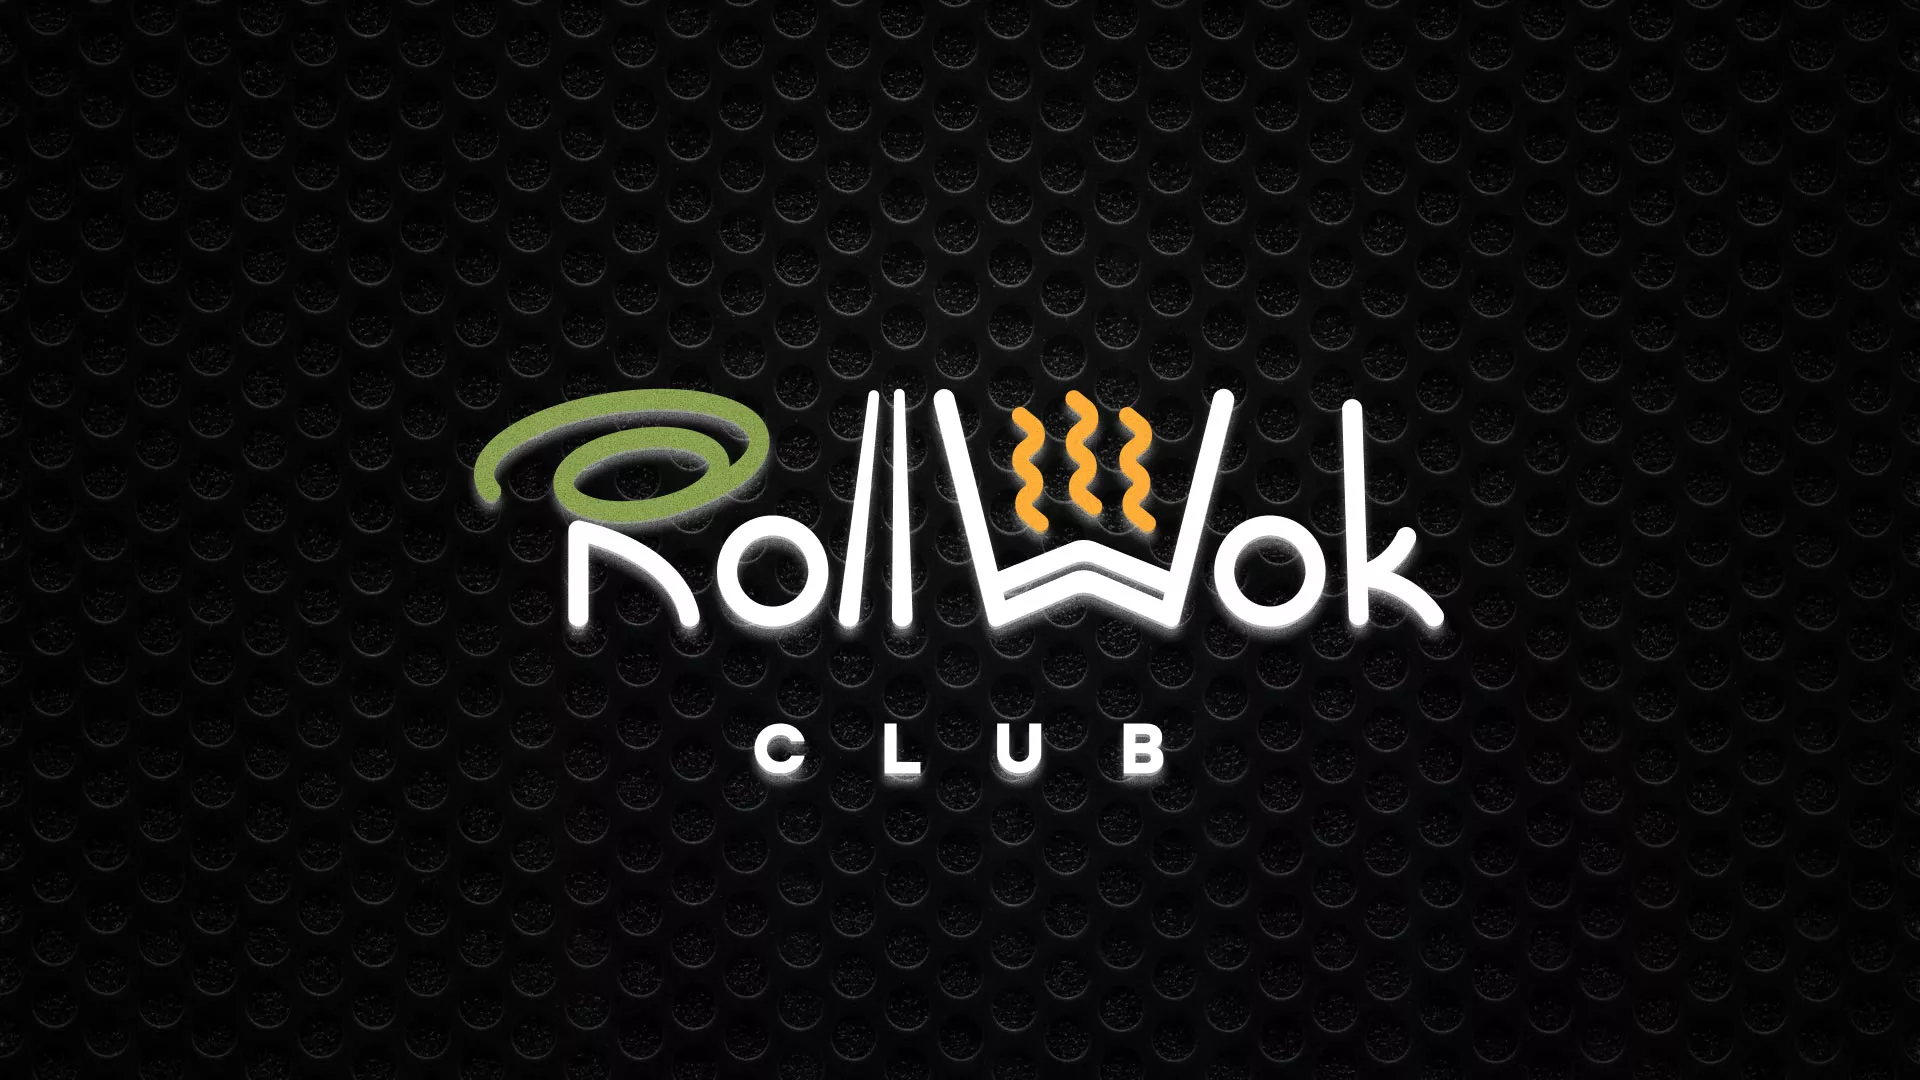 Брендирование торговых точек суши-бара «Roll Wok Club» в Емве